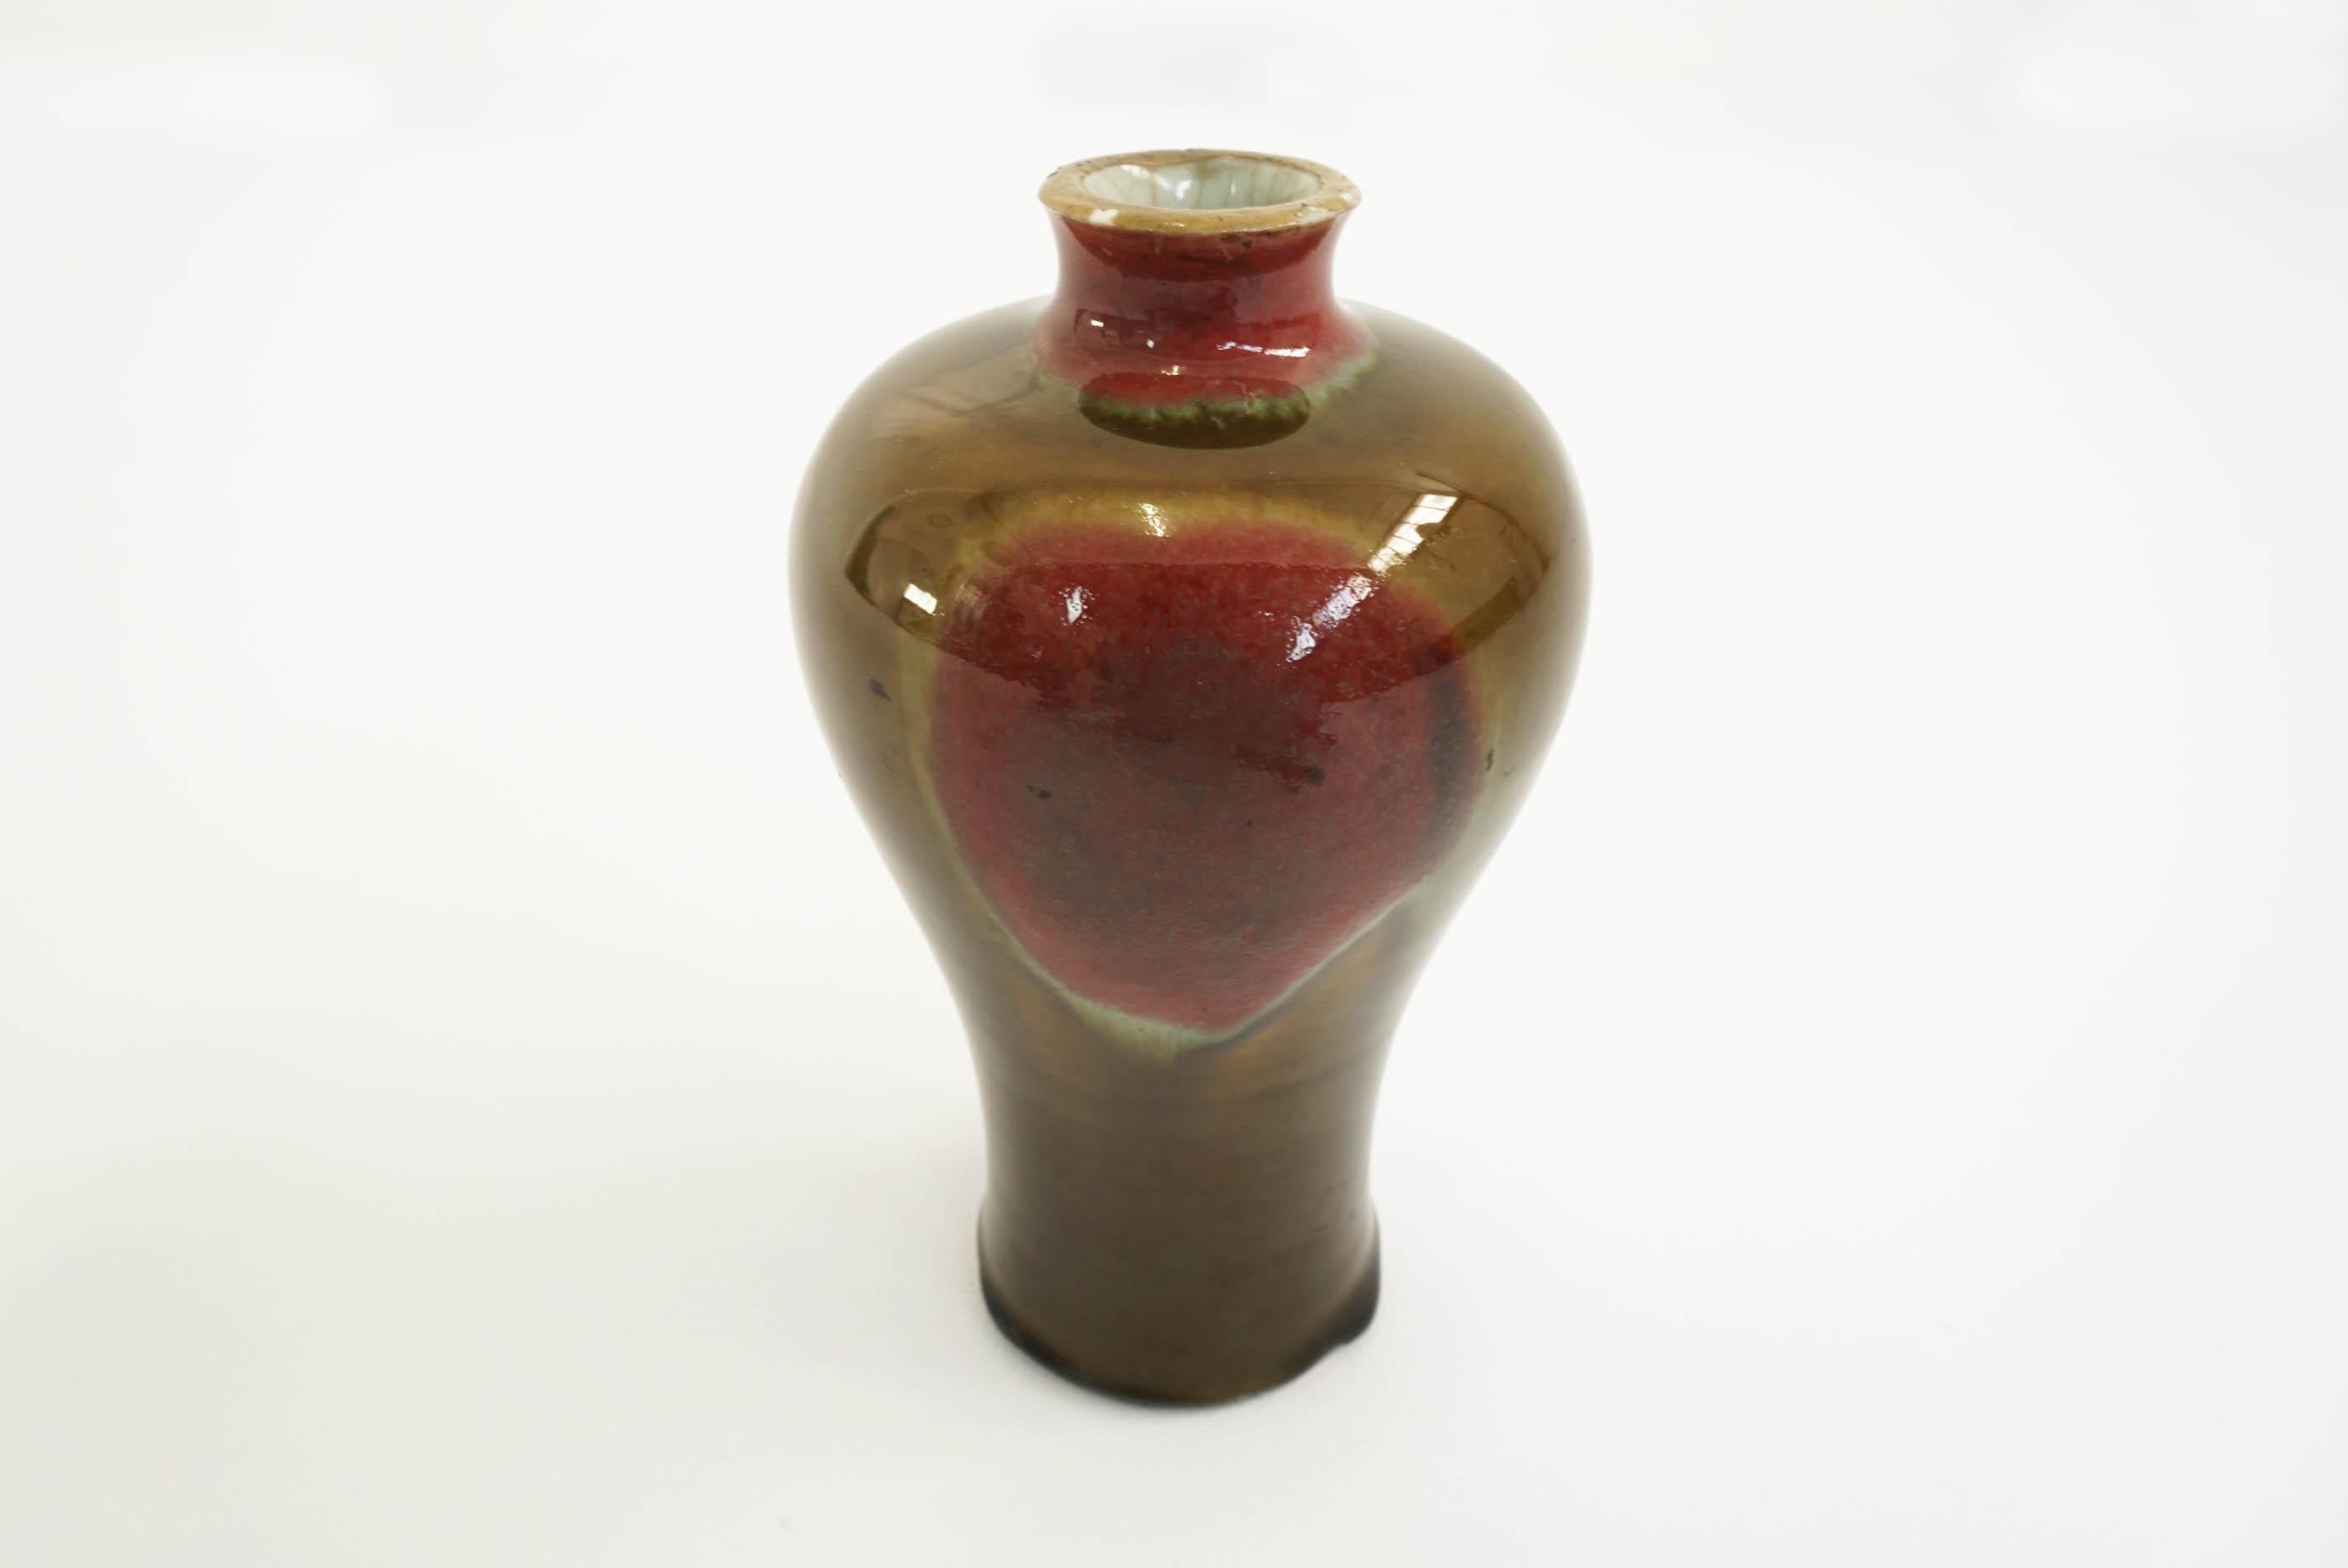 Toini Muona, Arabia, attributed glazed ceramic vase, Finland, circa late 1940